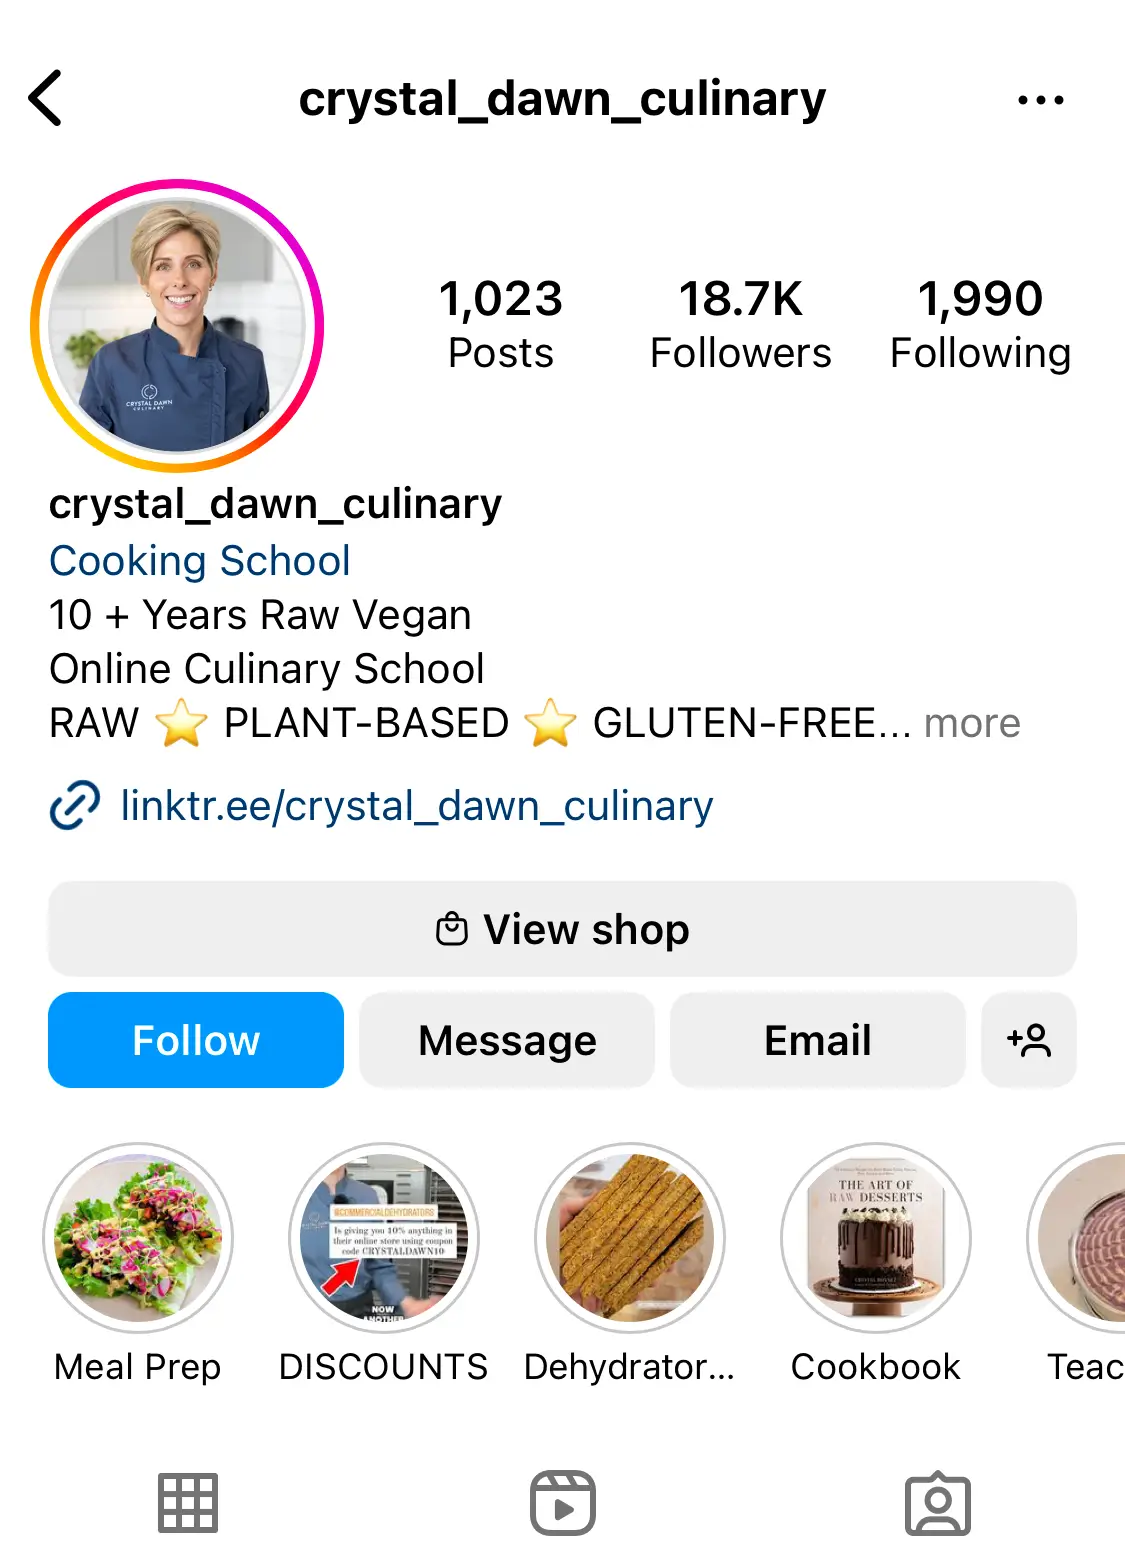 Top raw vegans on Instagram and YouTube🌱VEGi1